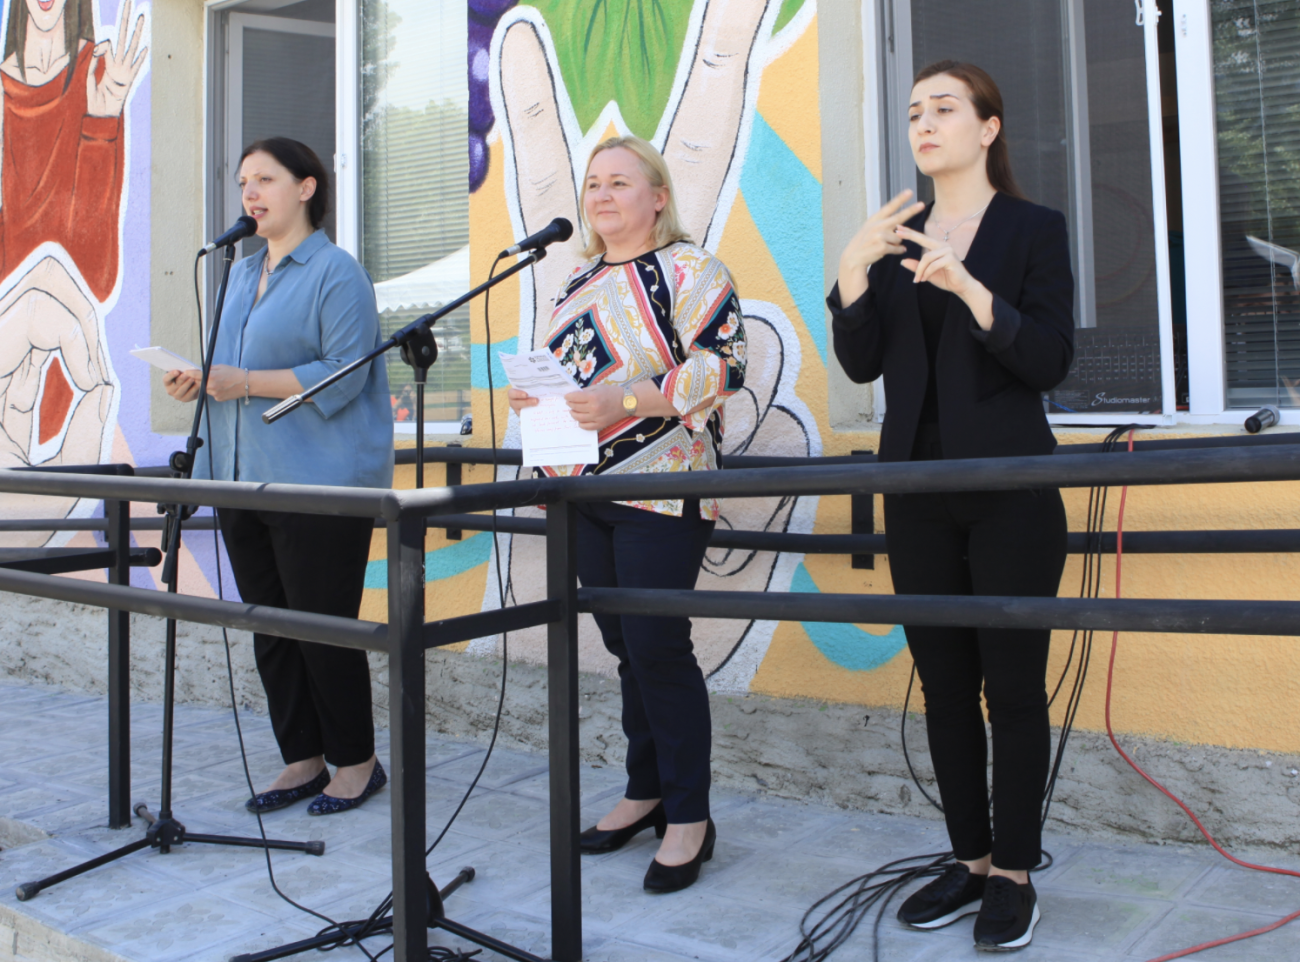 Trois femmes se tiennent debout devant un centre d'inclusion sociale dont la façade est recouverte de peintures murales colorées. Une femme, à l'extrémité gauche de l'image, s'exprime au micro, tandis qu'une autre femme, à droite de l'image, traduit le discours prononcé dans la langue des signes.